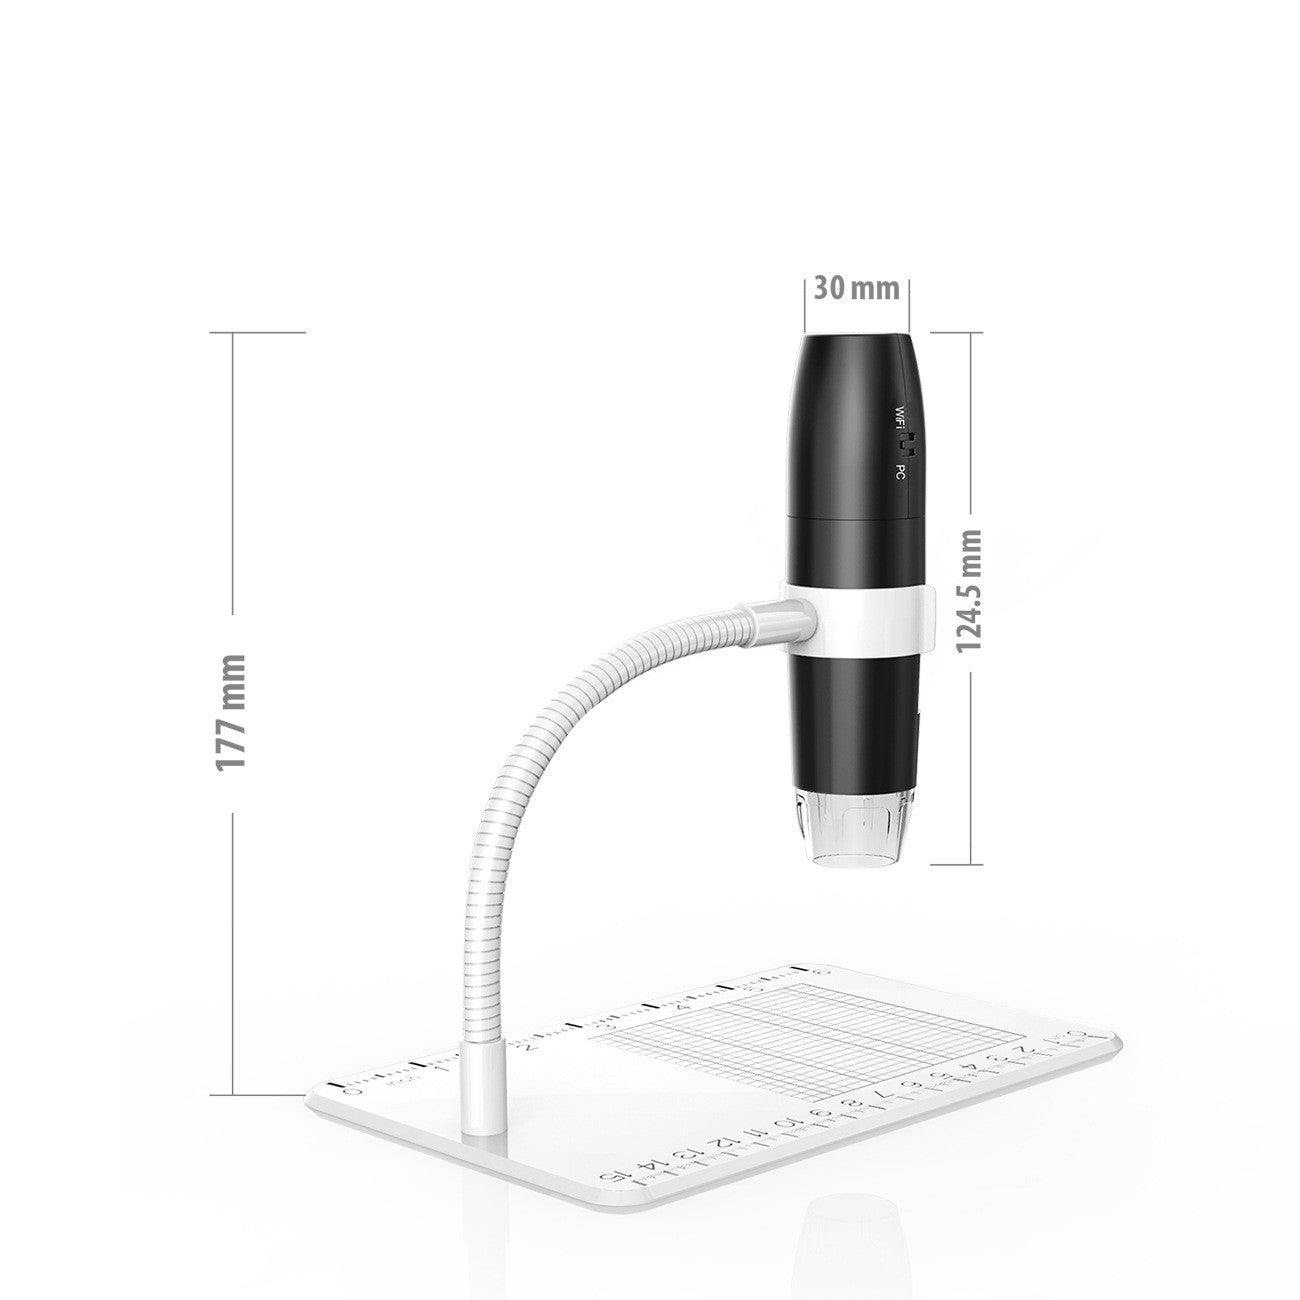 3-in-1 USB Digital Microscope - Microscopes -  Trend Goods